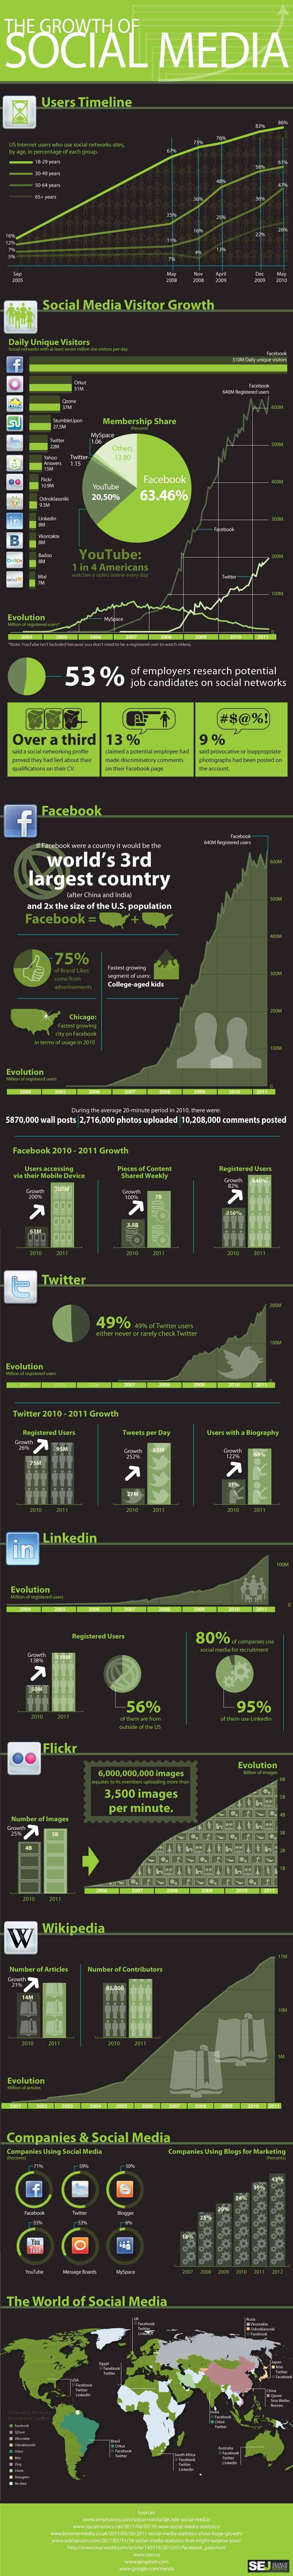 el crecimiento del social media